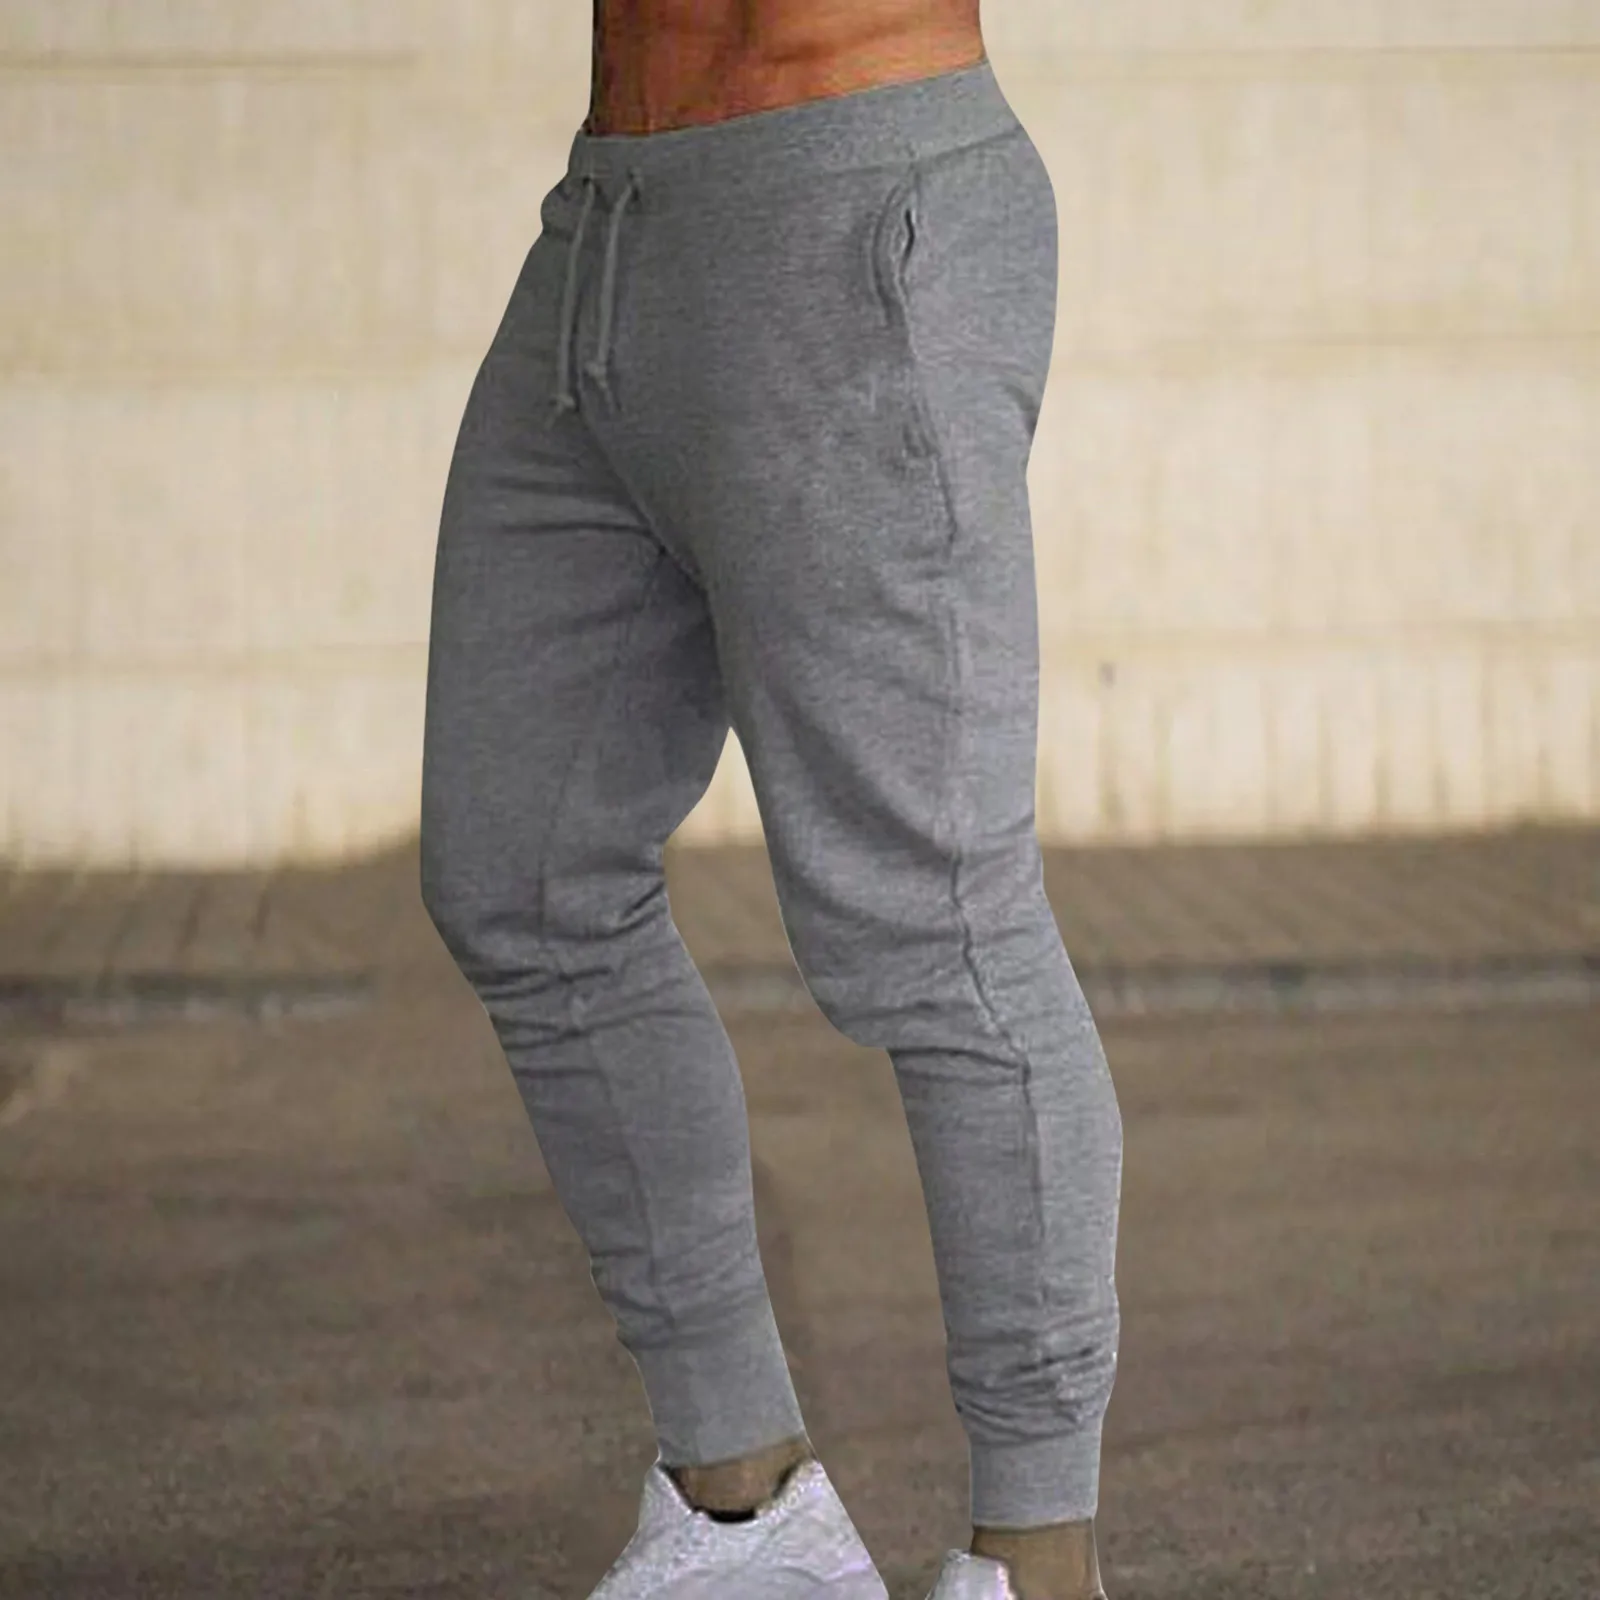 Tanie Moda siłownia spodnie do ćwiczeń mężczyźni trening biegacze bieganie spodnie sklep